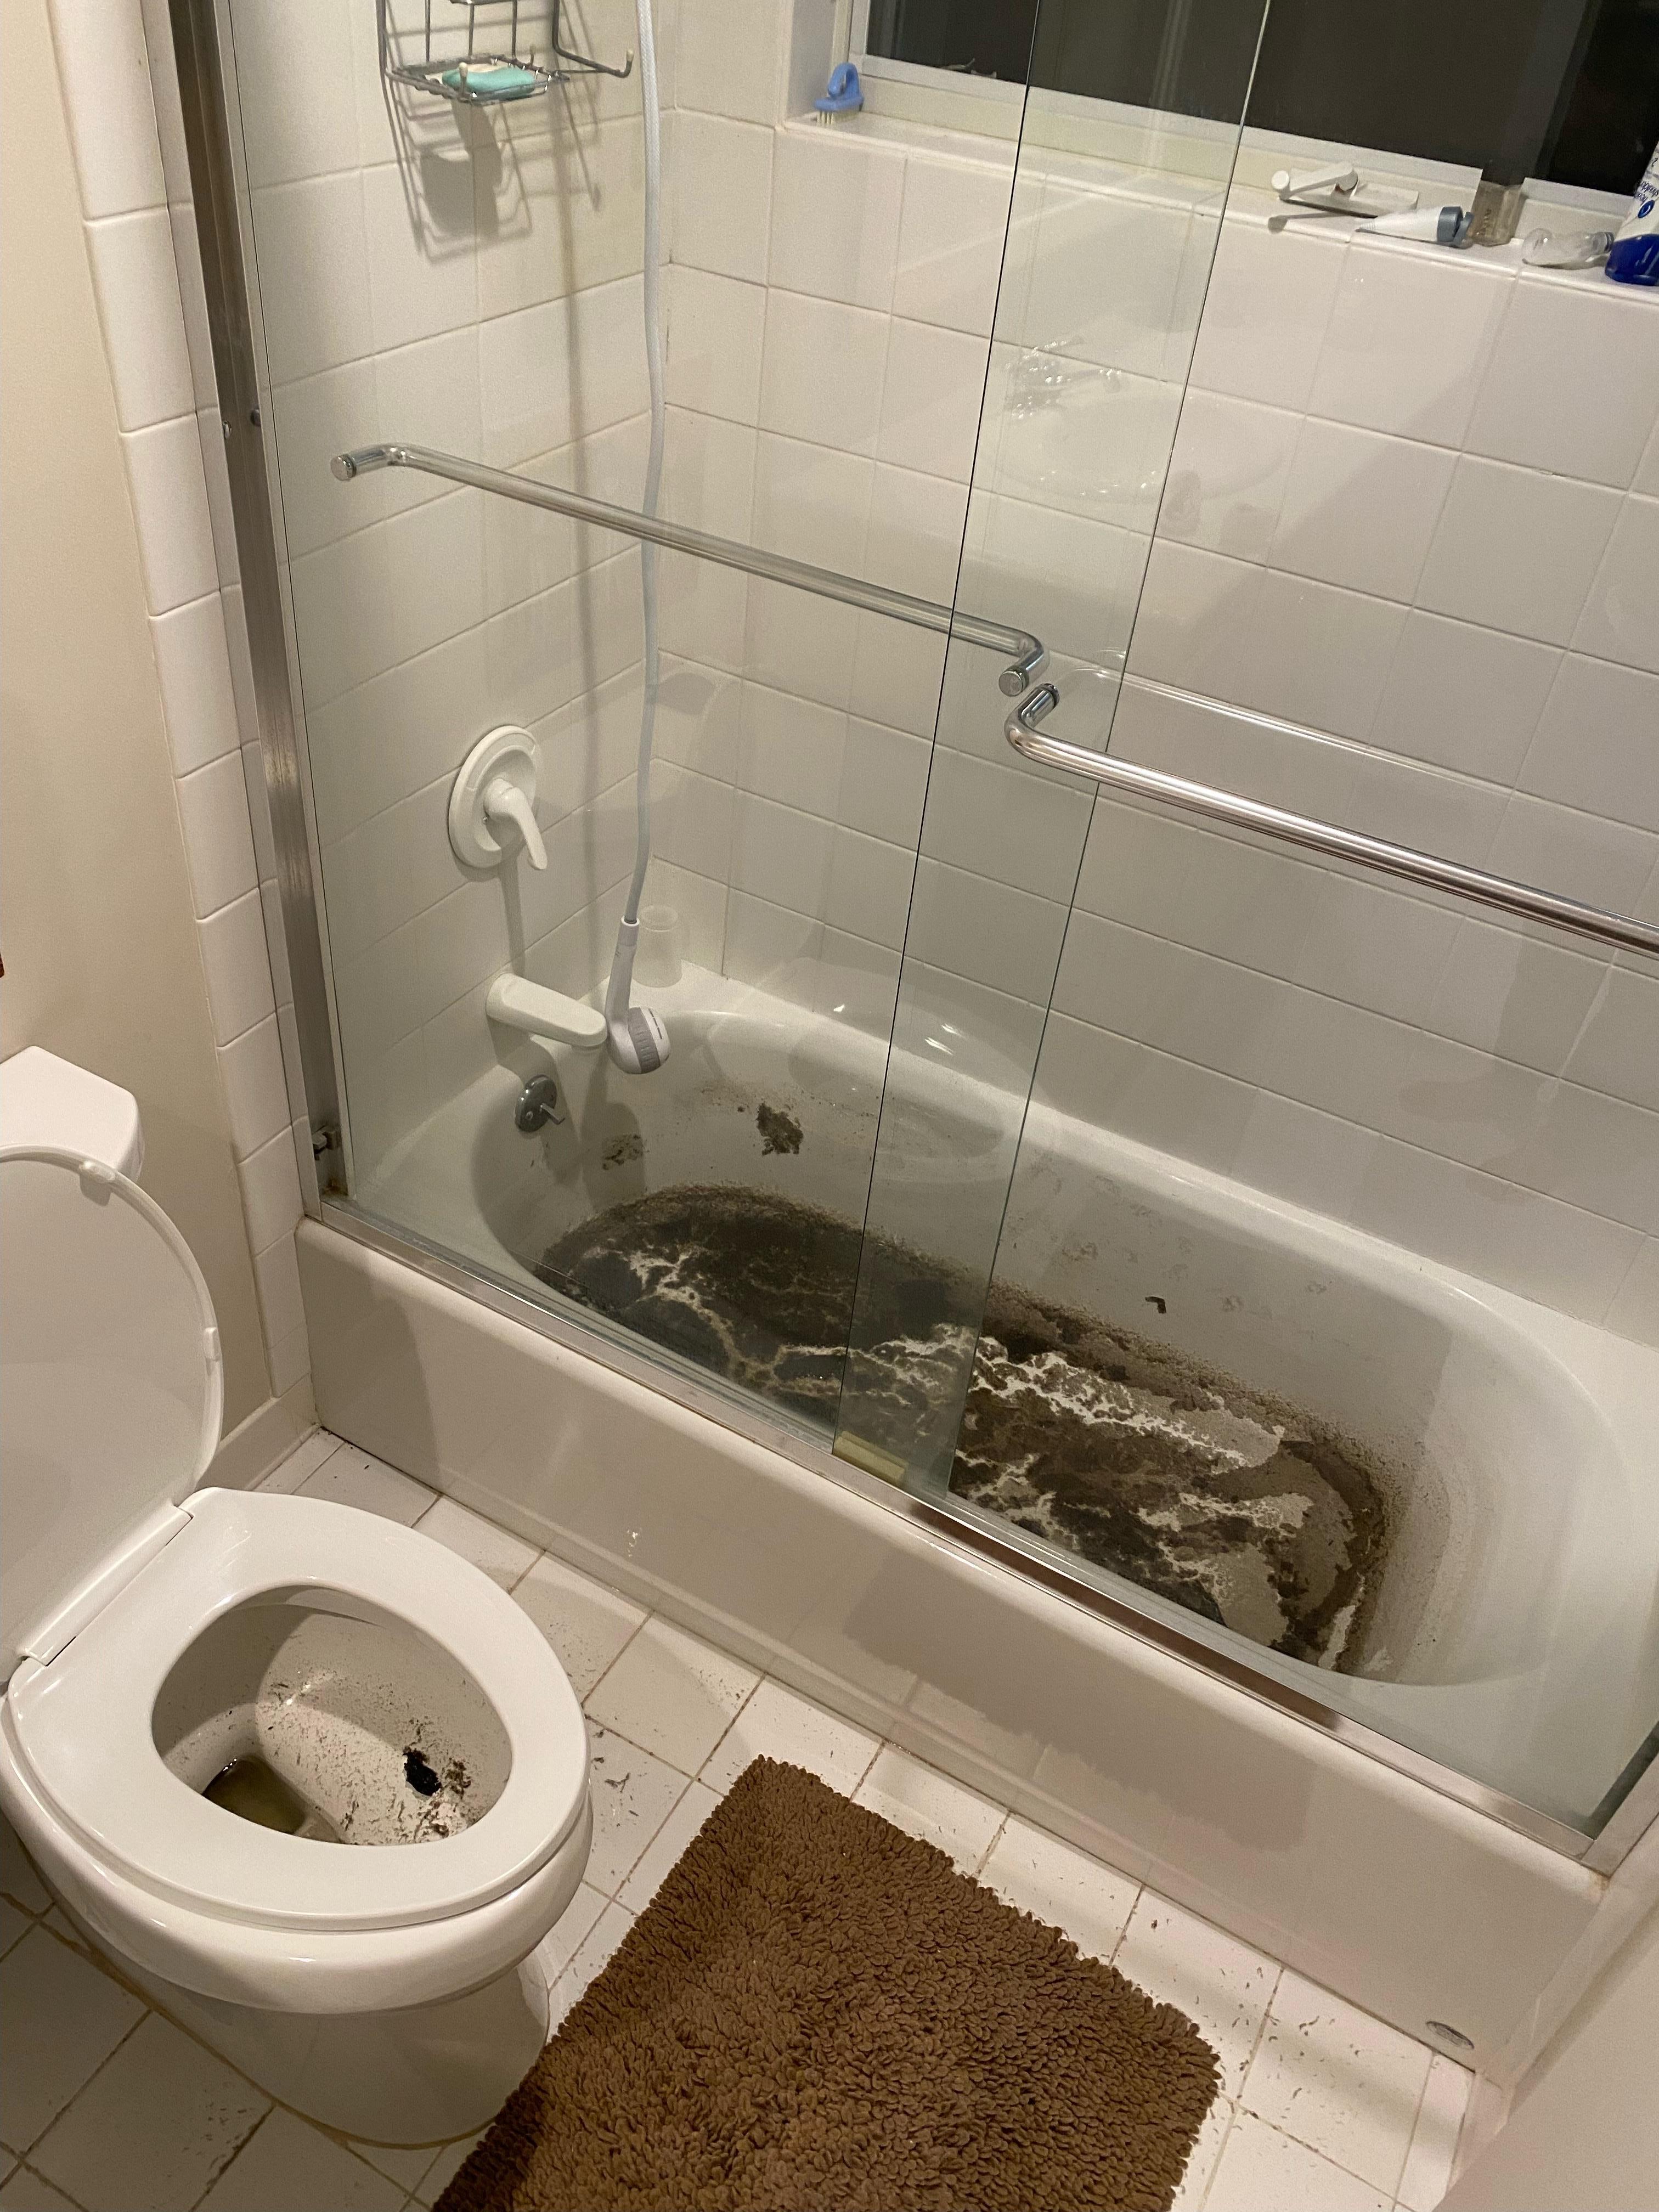 Sewage damage in bathroom